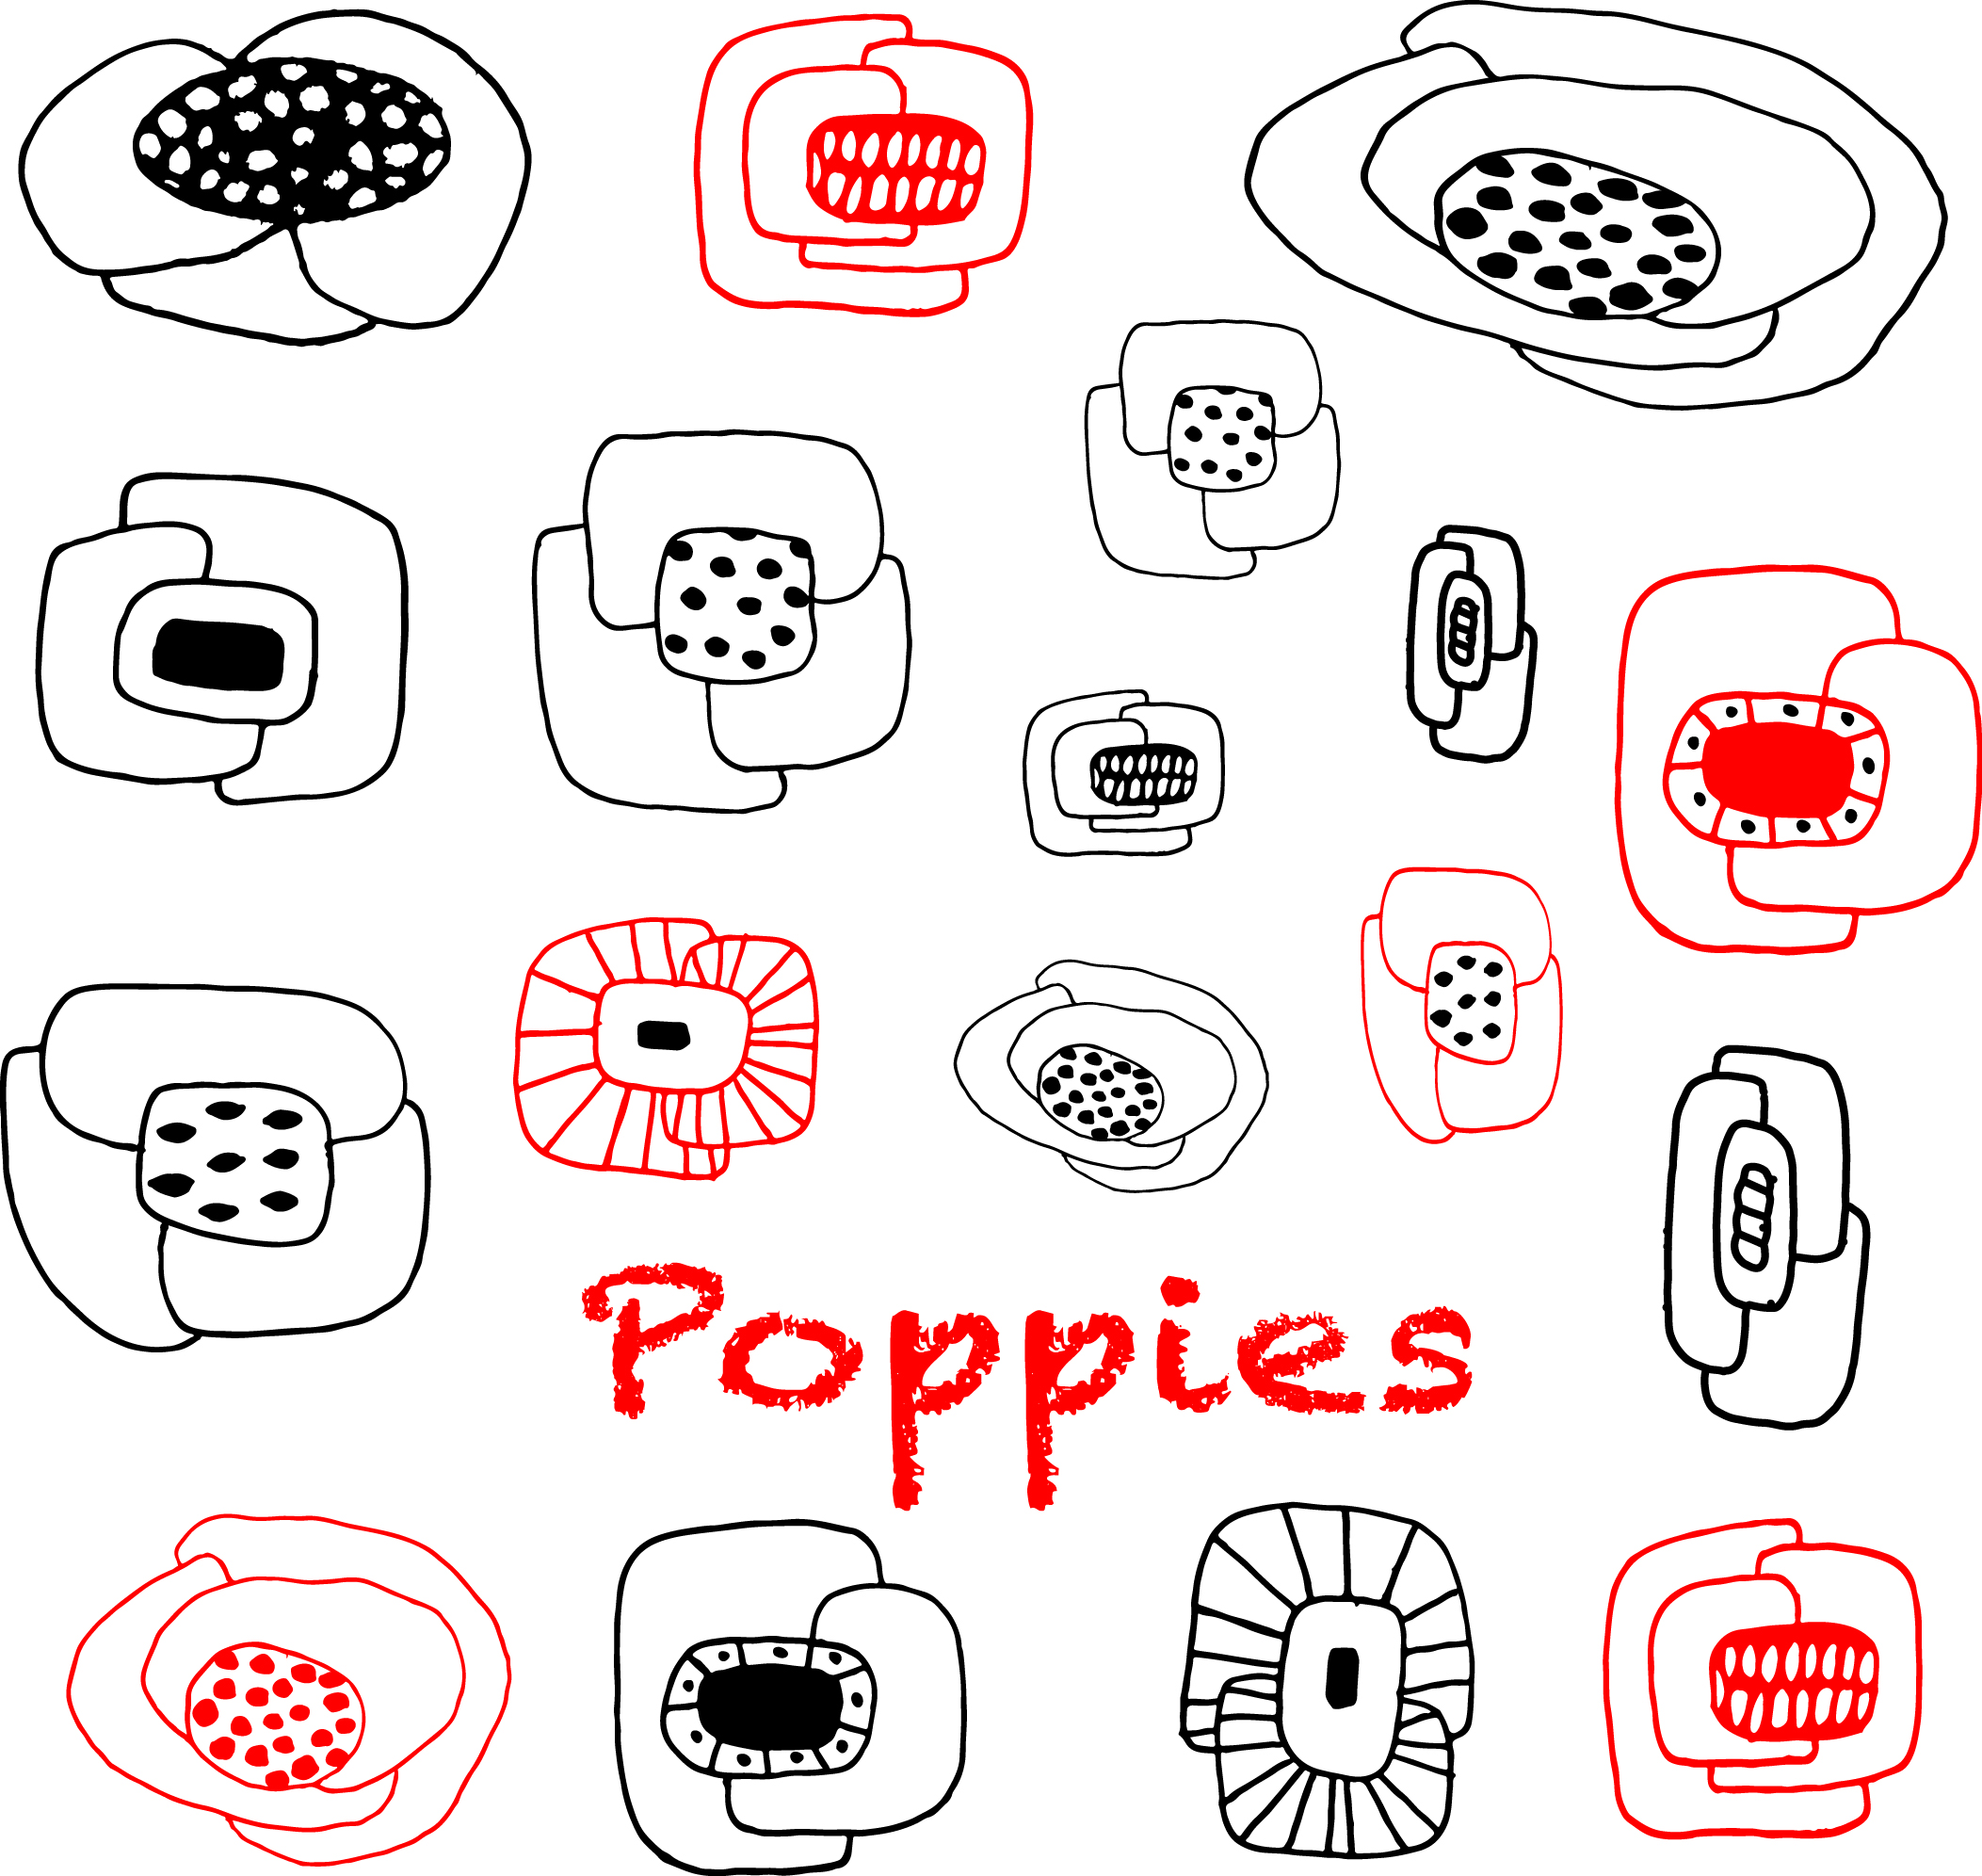 Poppies illustrations.jpg